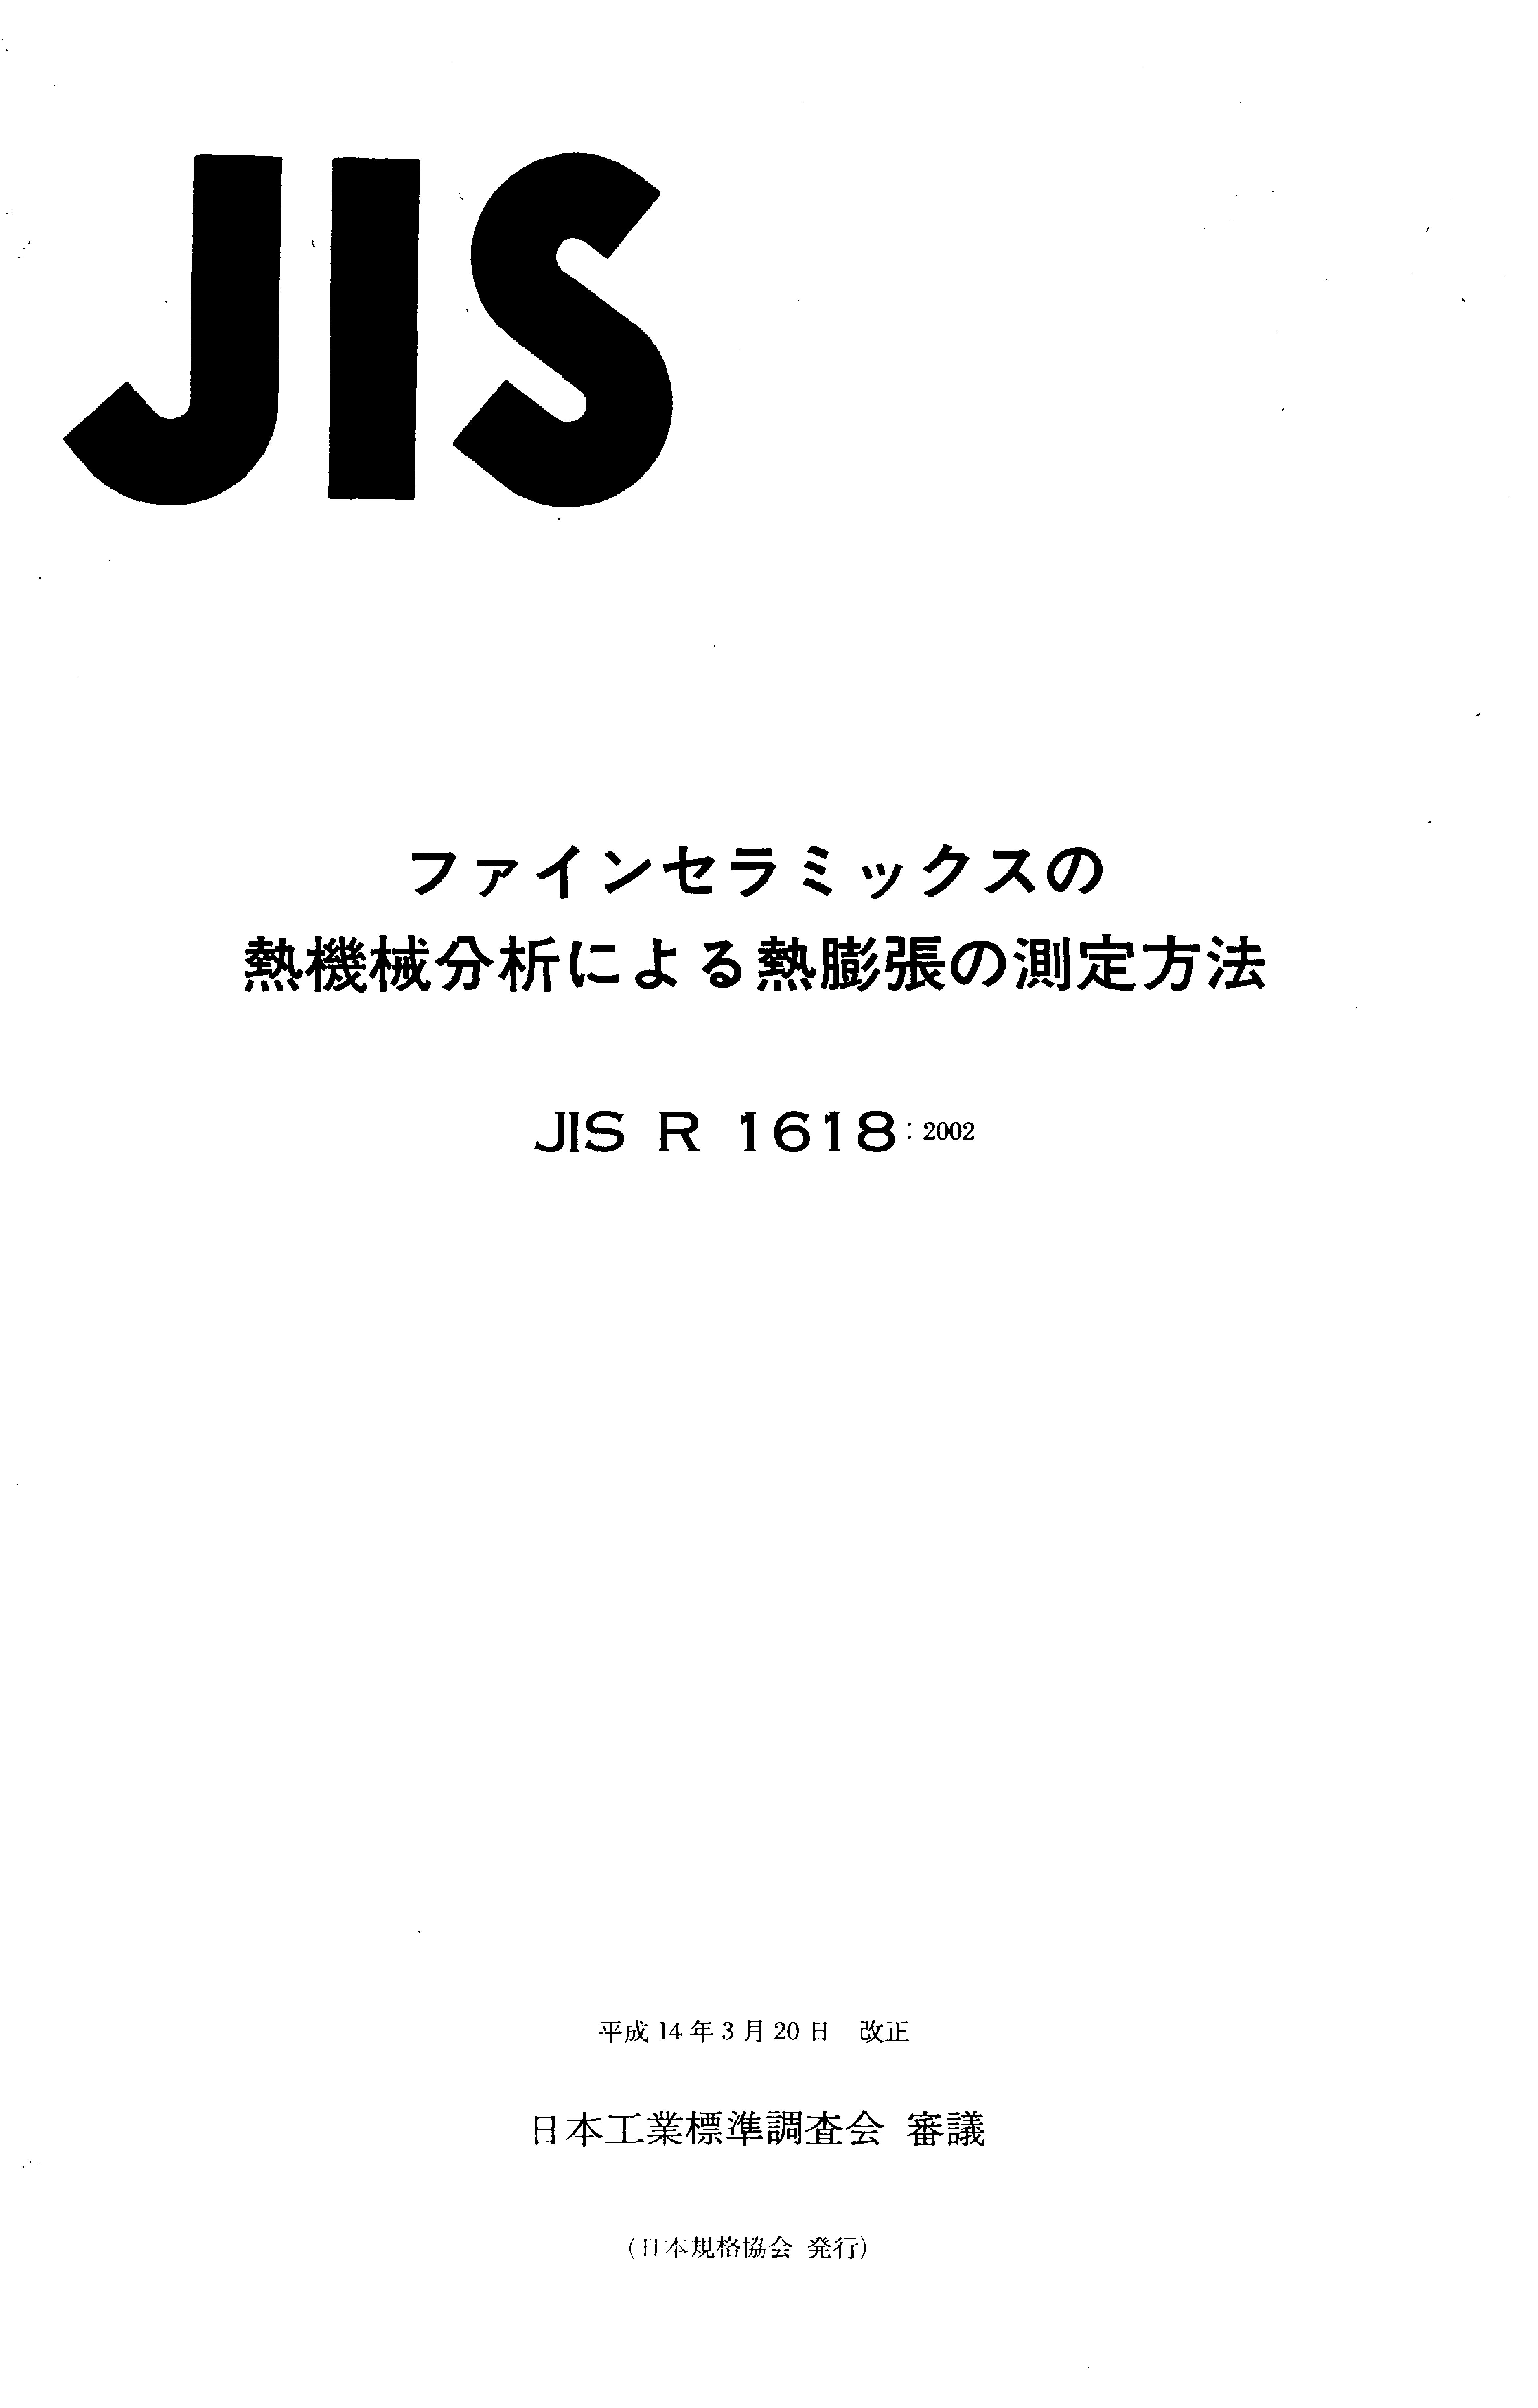 JIS R 1618:2002